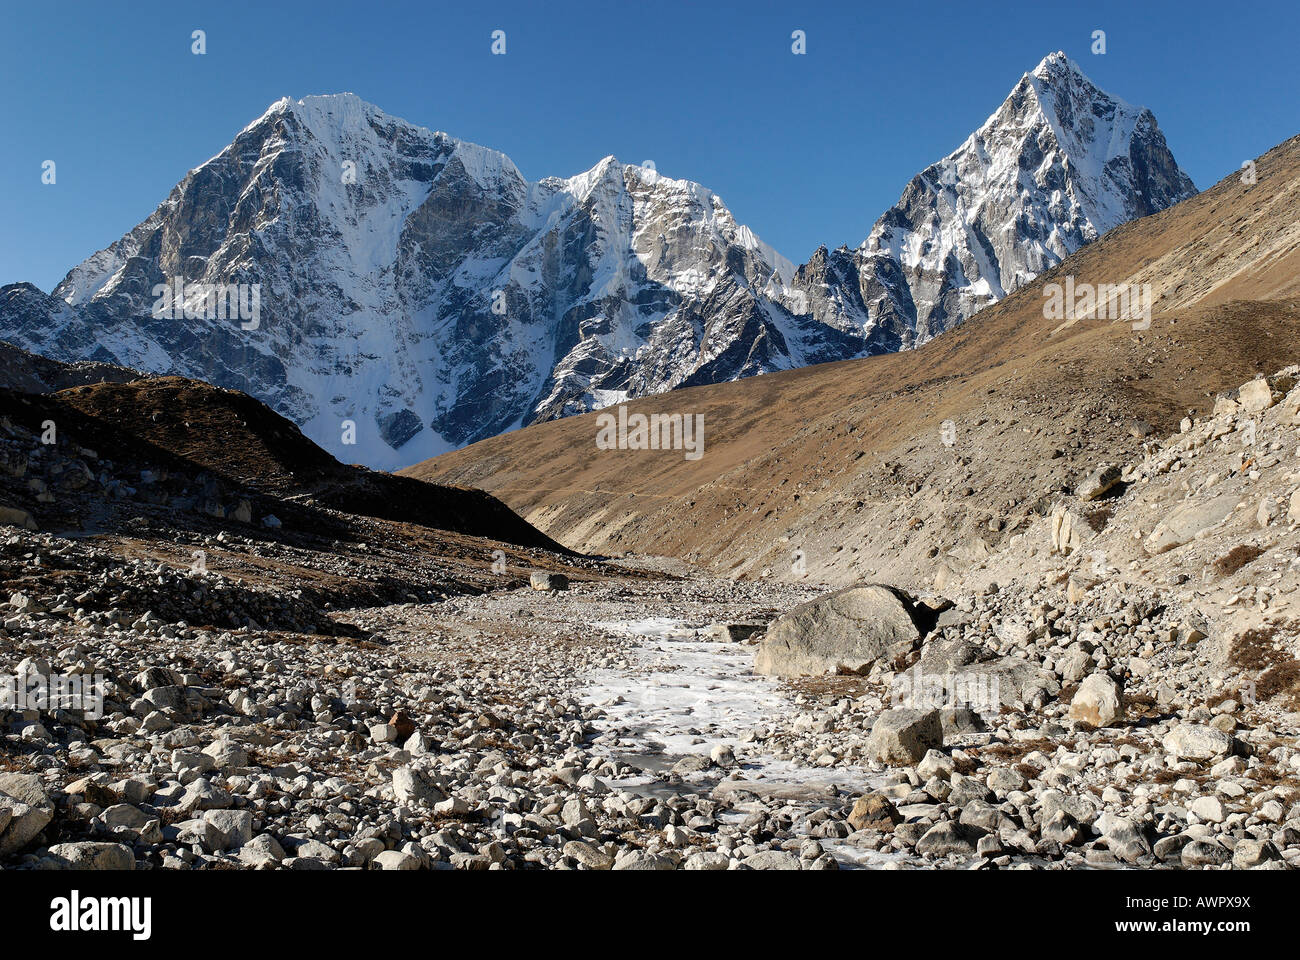 Khumbu glacier moraine with Taboche (6367), Cholatse (6335) and Arakamtse (6423), Khumbu Himal, Sagarmatha National Park, Nepal Stock Photo